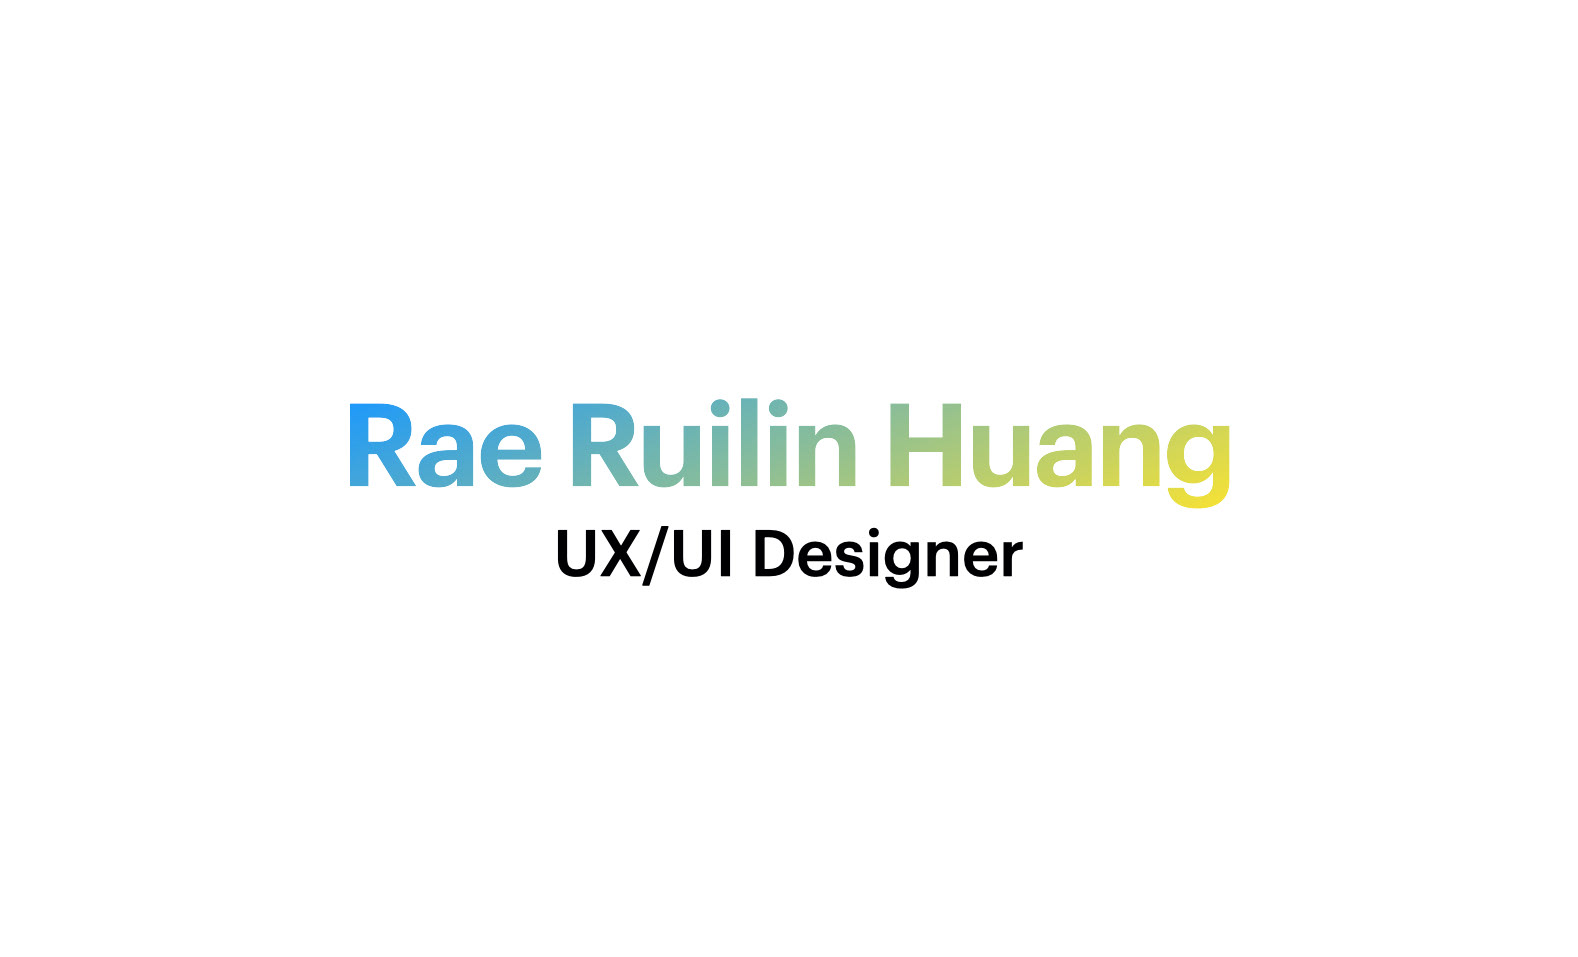 Rae Ruilin Huang - Ropay